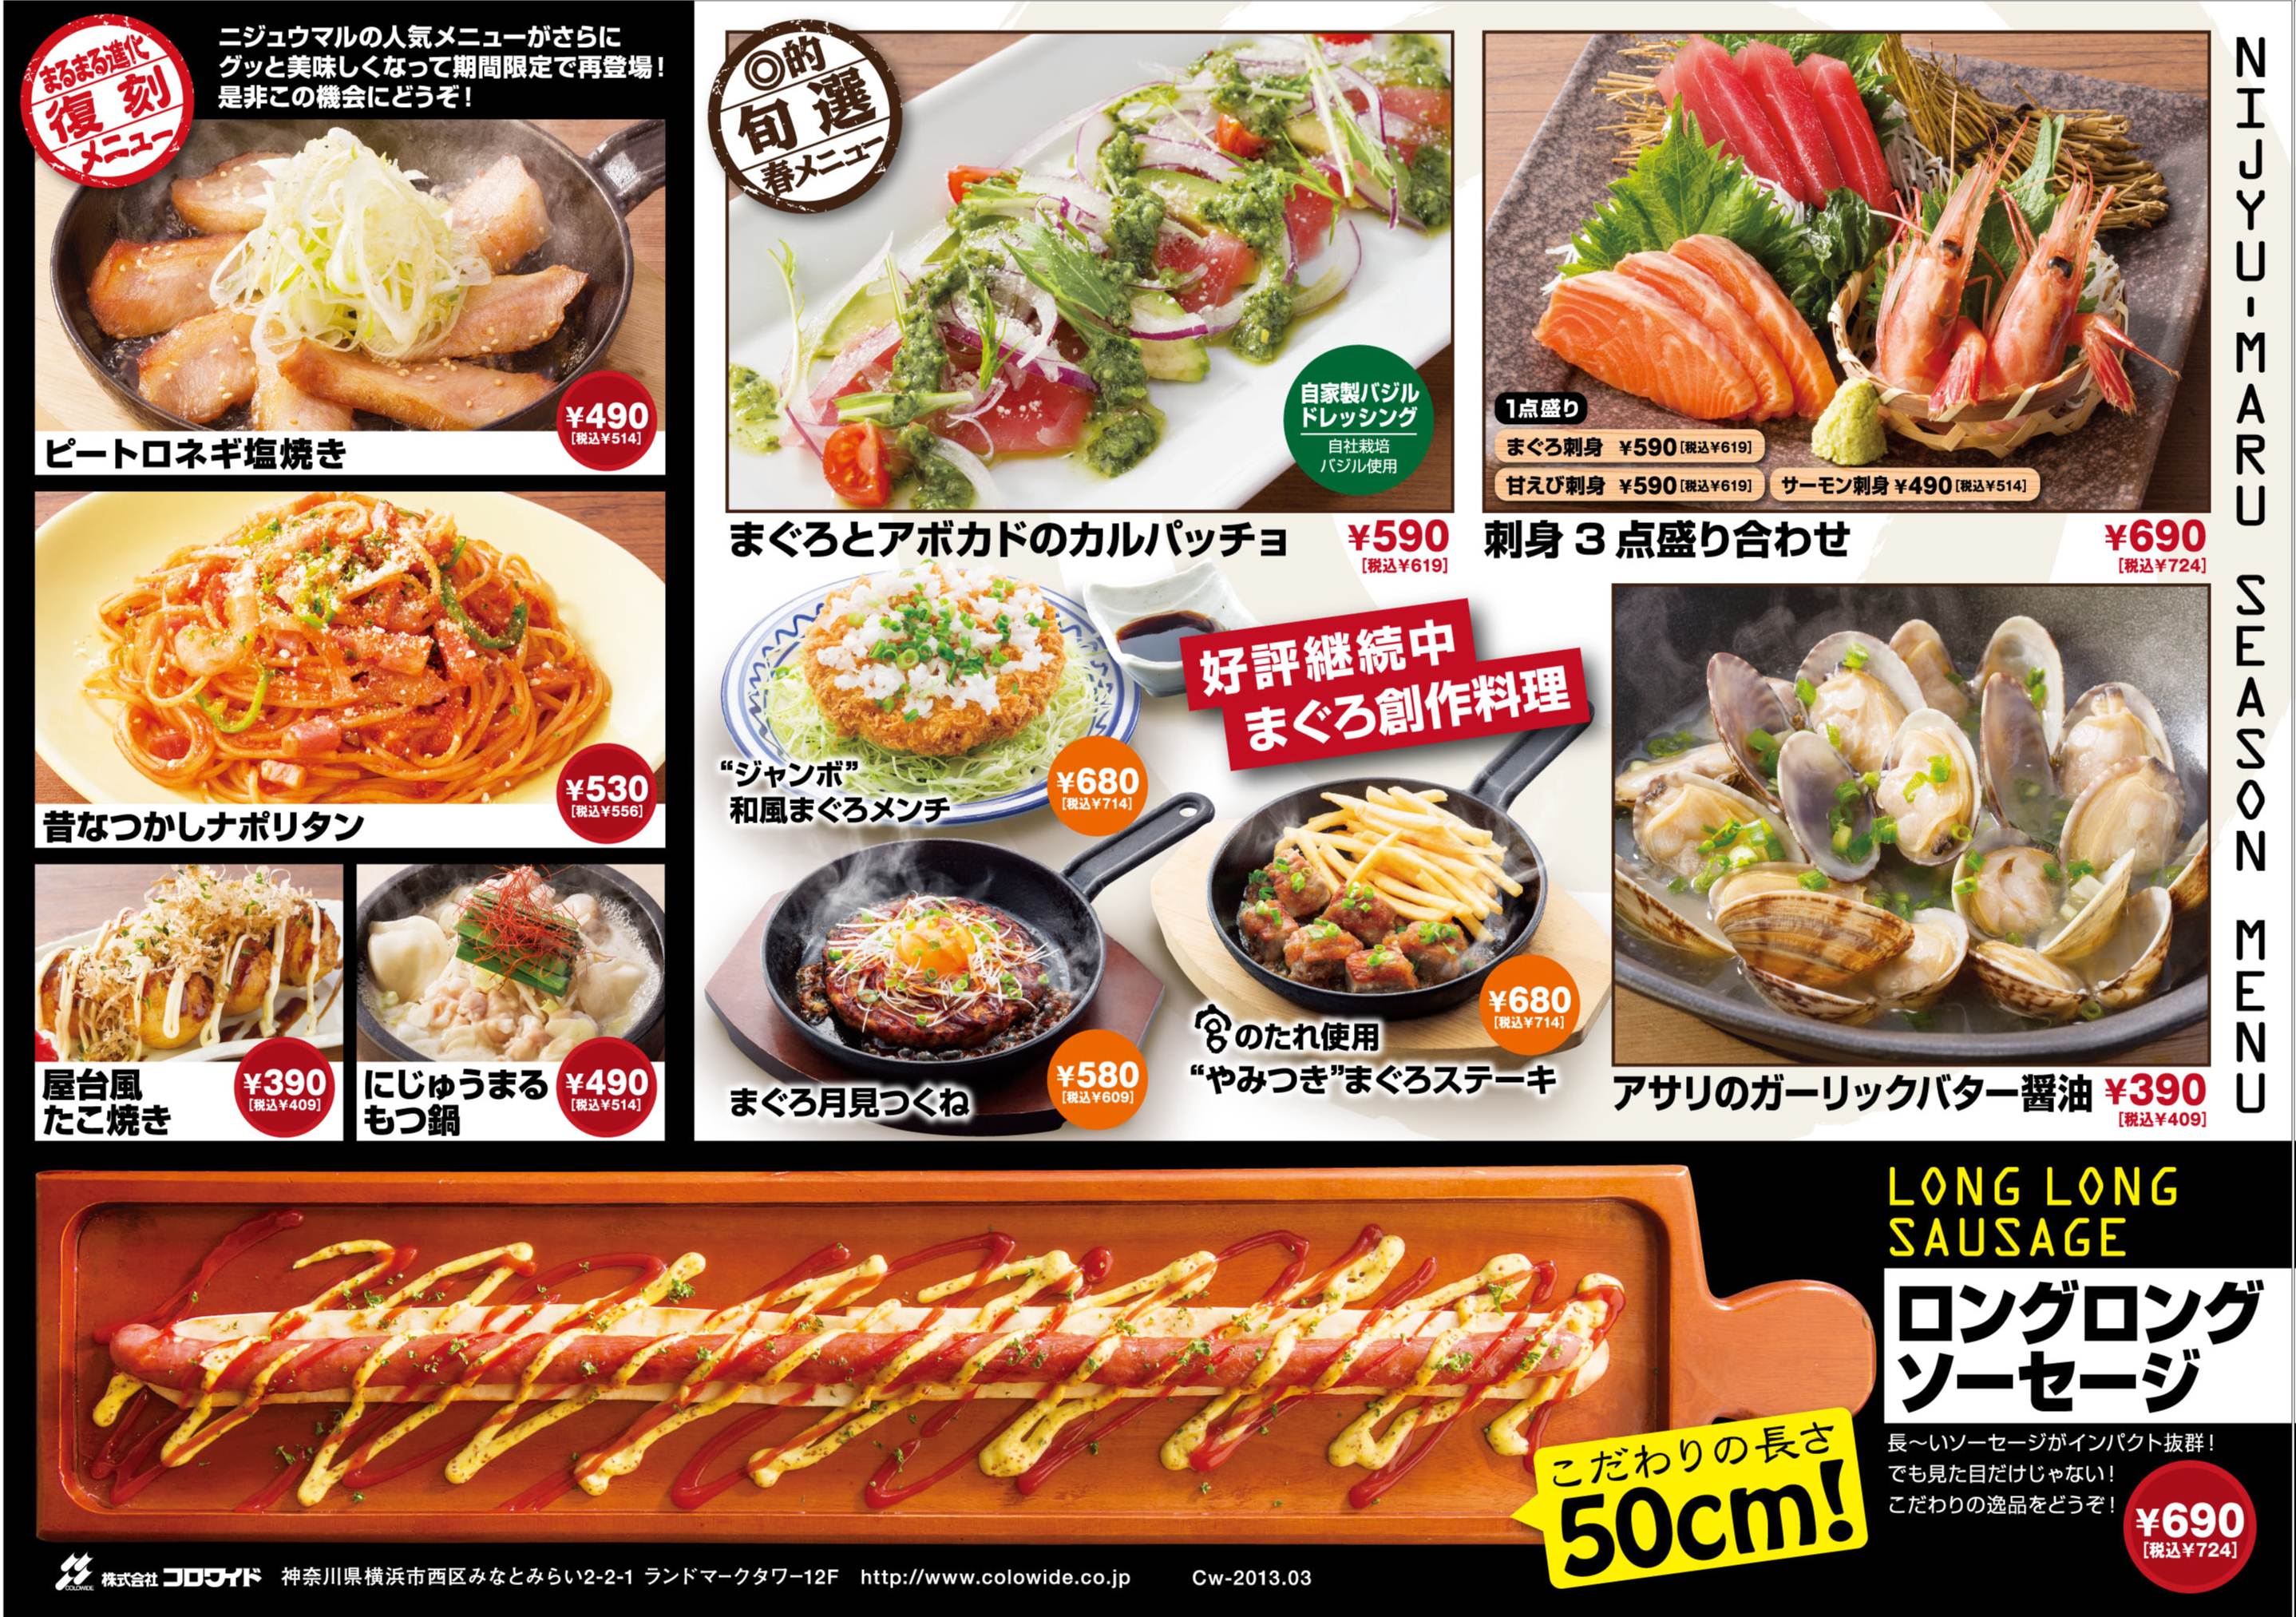 遊食三昧 Nijyu Maru 春のシーズンメニュー 提供開始 13年3月6日 水 関東 関西全店舗 株式会社コロワイドのプレスリリース